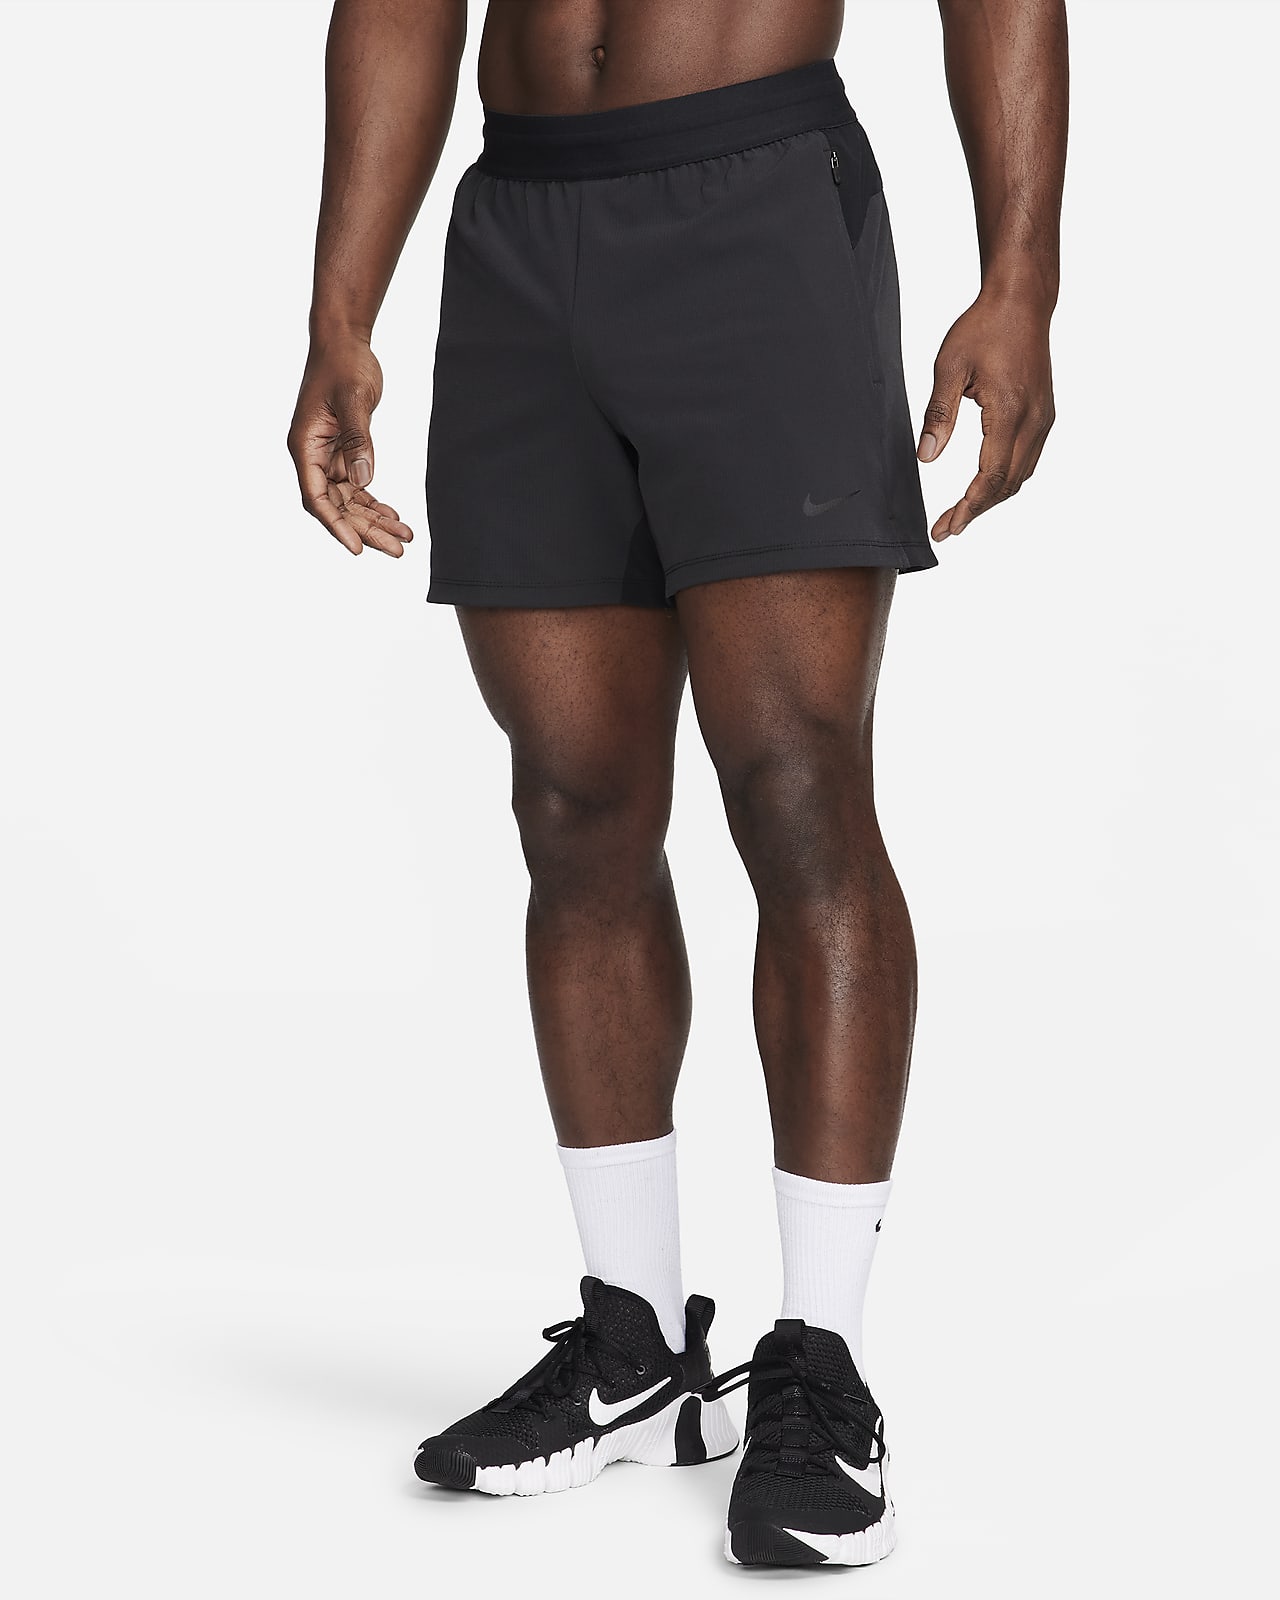 Shorts da fitness Dri-FIT non foderati 13 cm Nike Flex Rep – Uomo